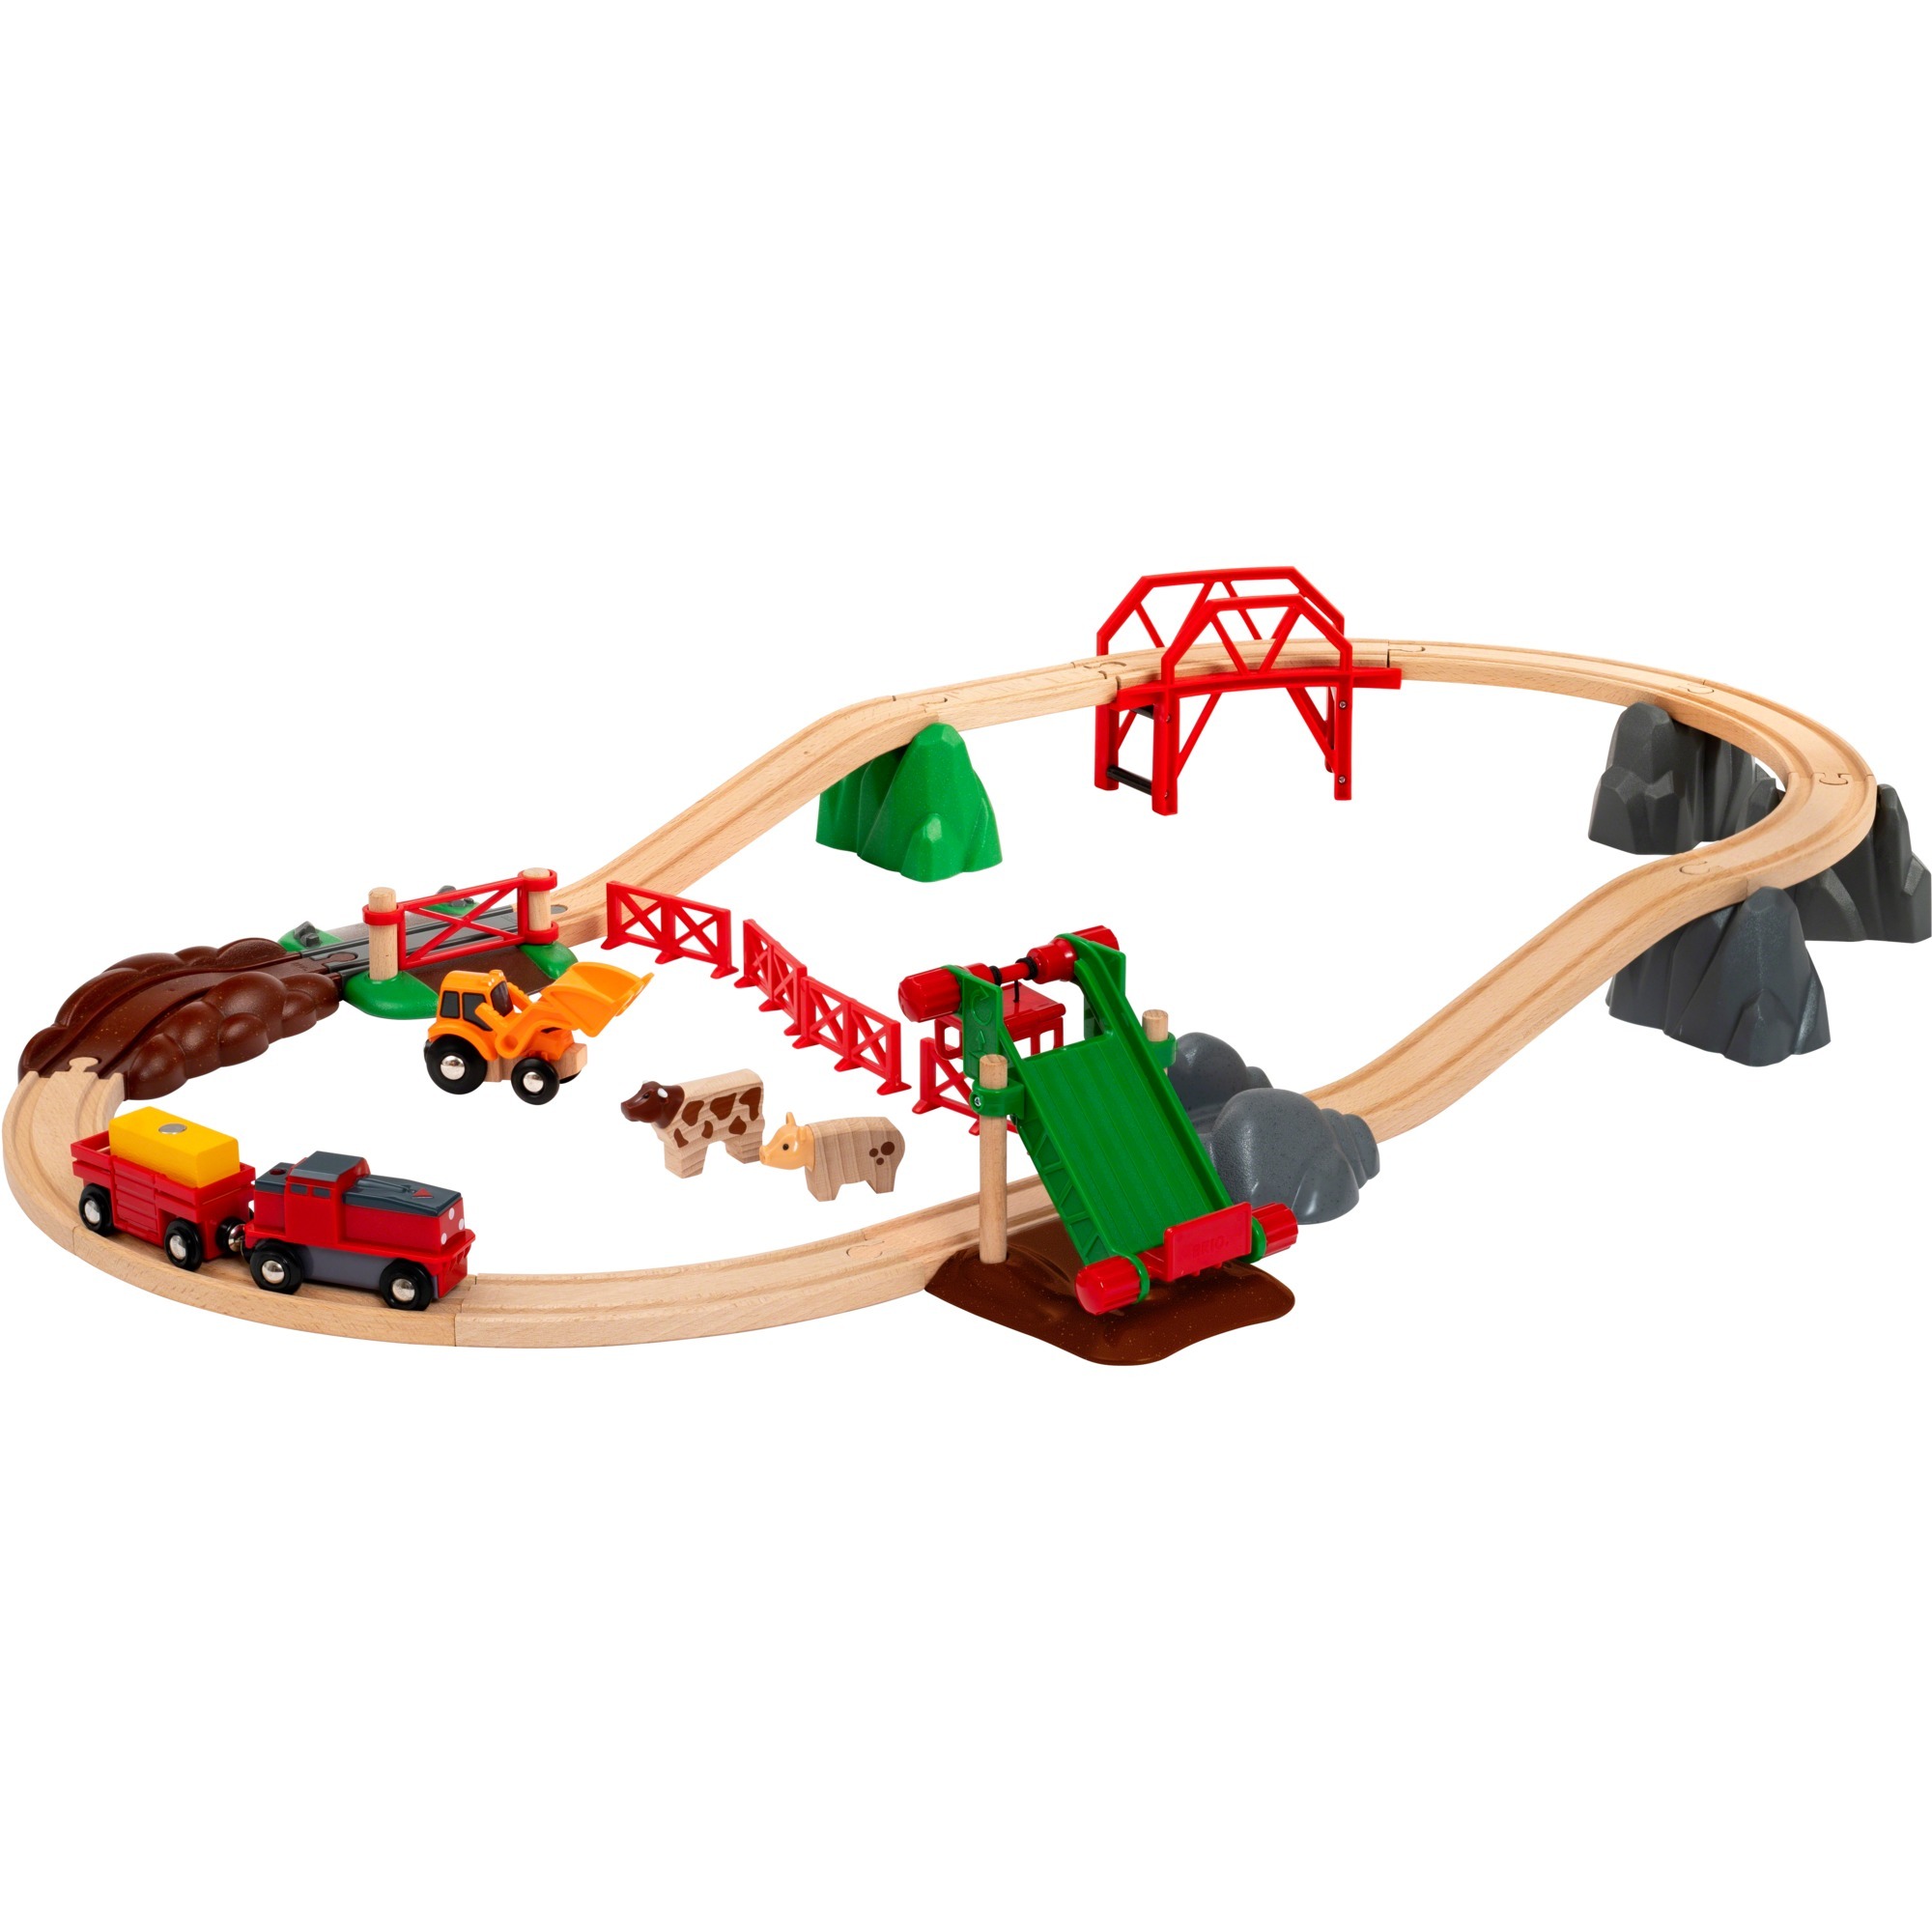 Image of Alternate - Großes Bahn Bauernhof-Set online einkaufen bei Alternate